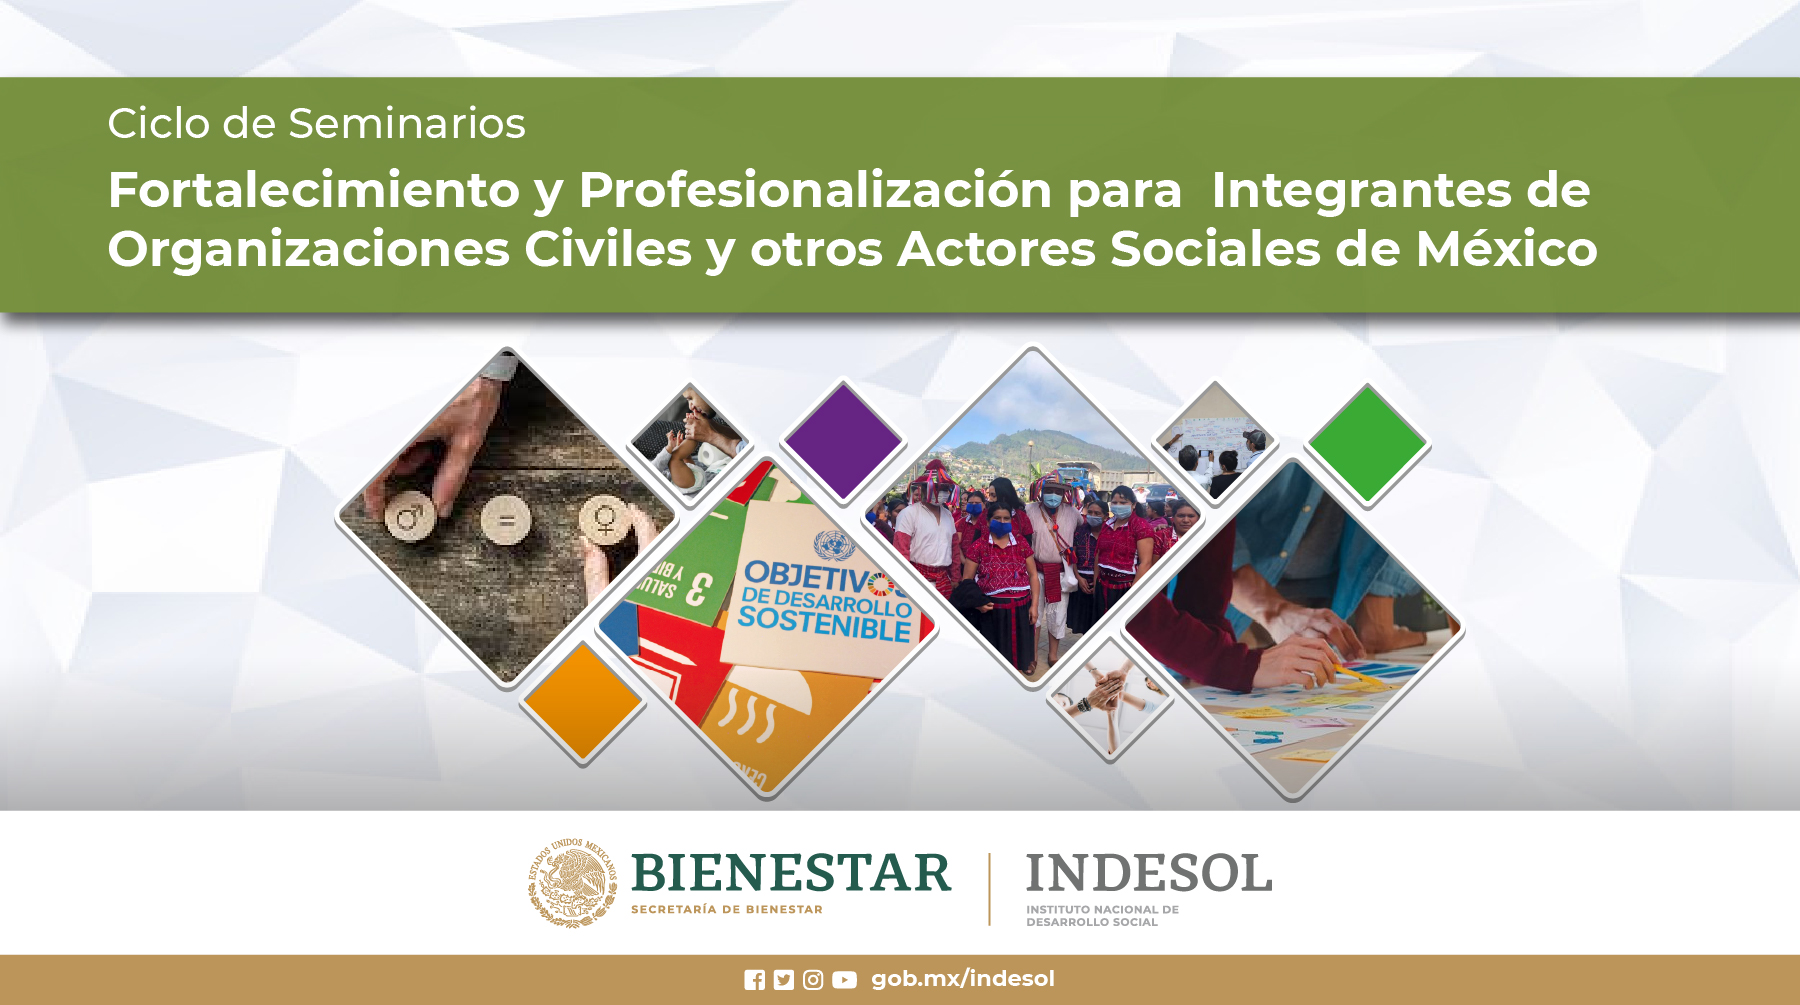 Ciclo de Seminarios de Fortalecimiento y Profesionalización para las y los Integrantes de Organizaciones Civiles y otros Actores Sociales de México